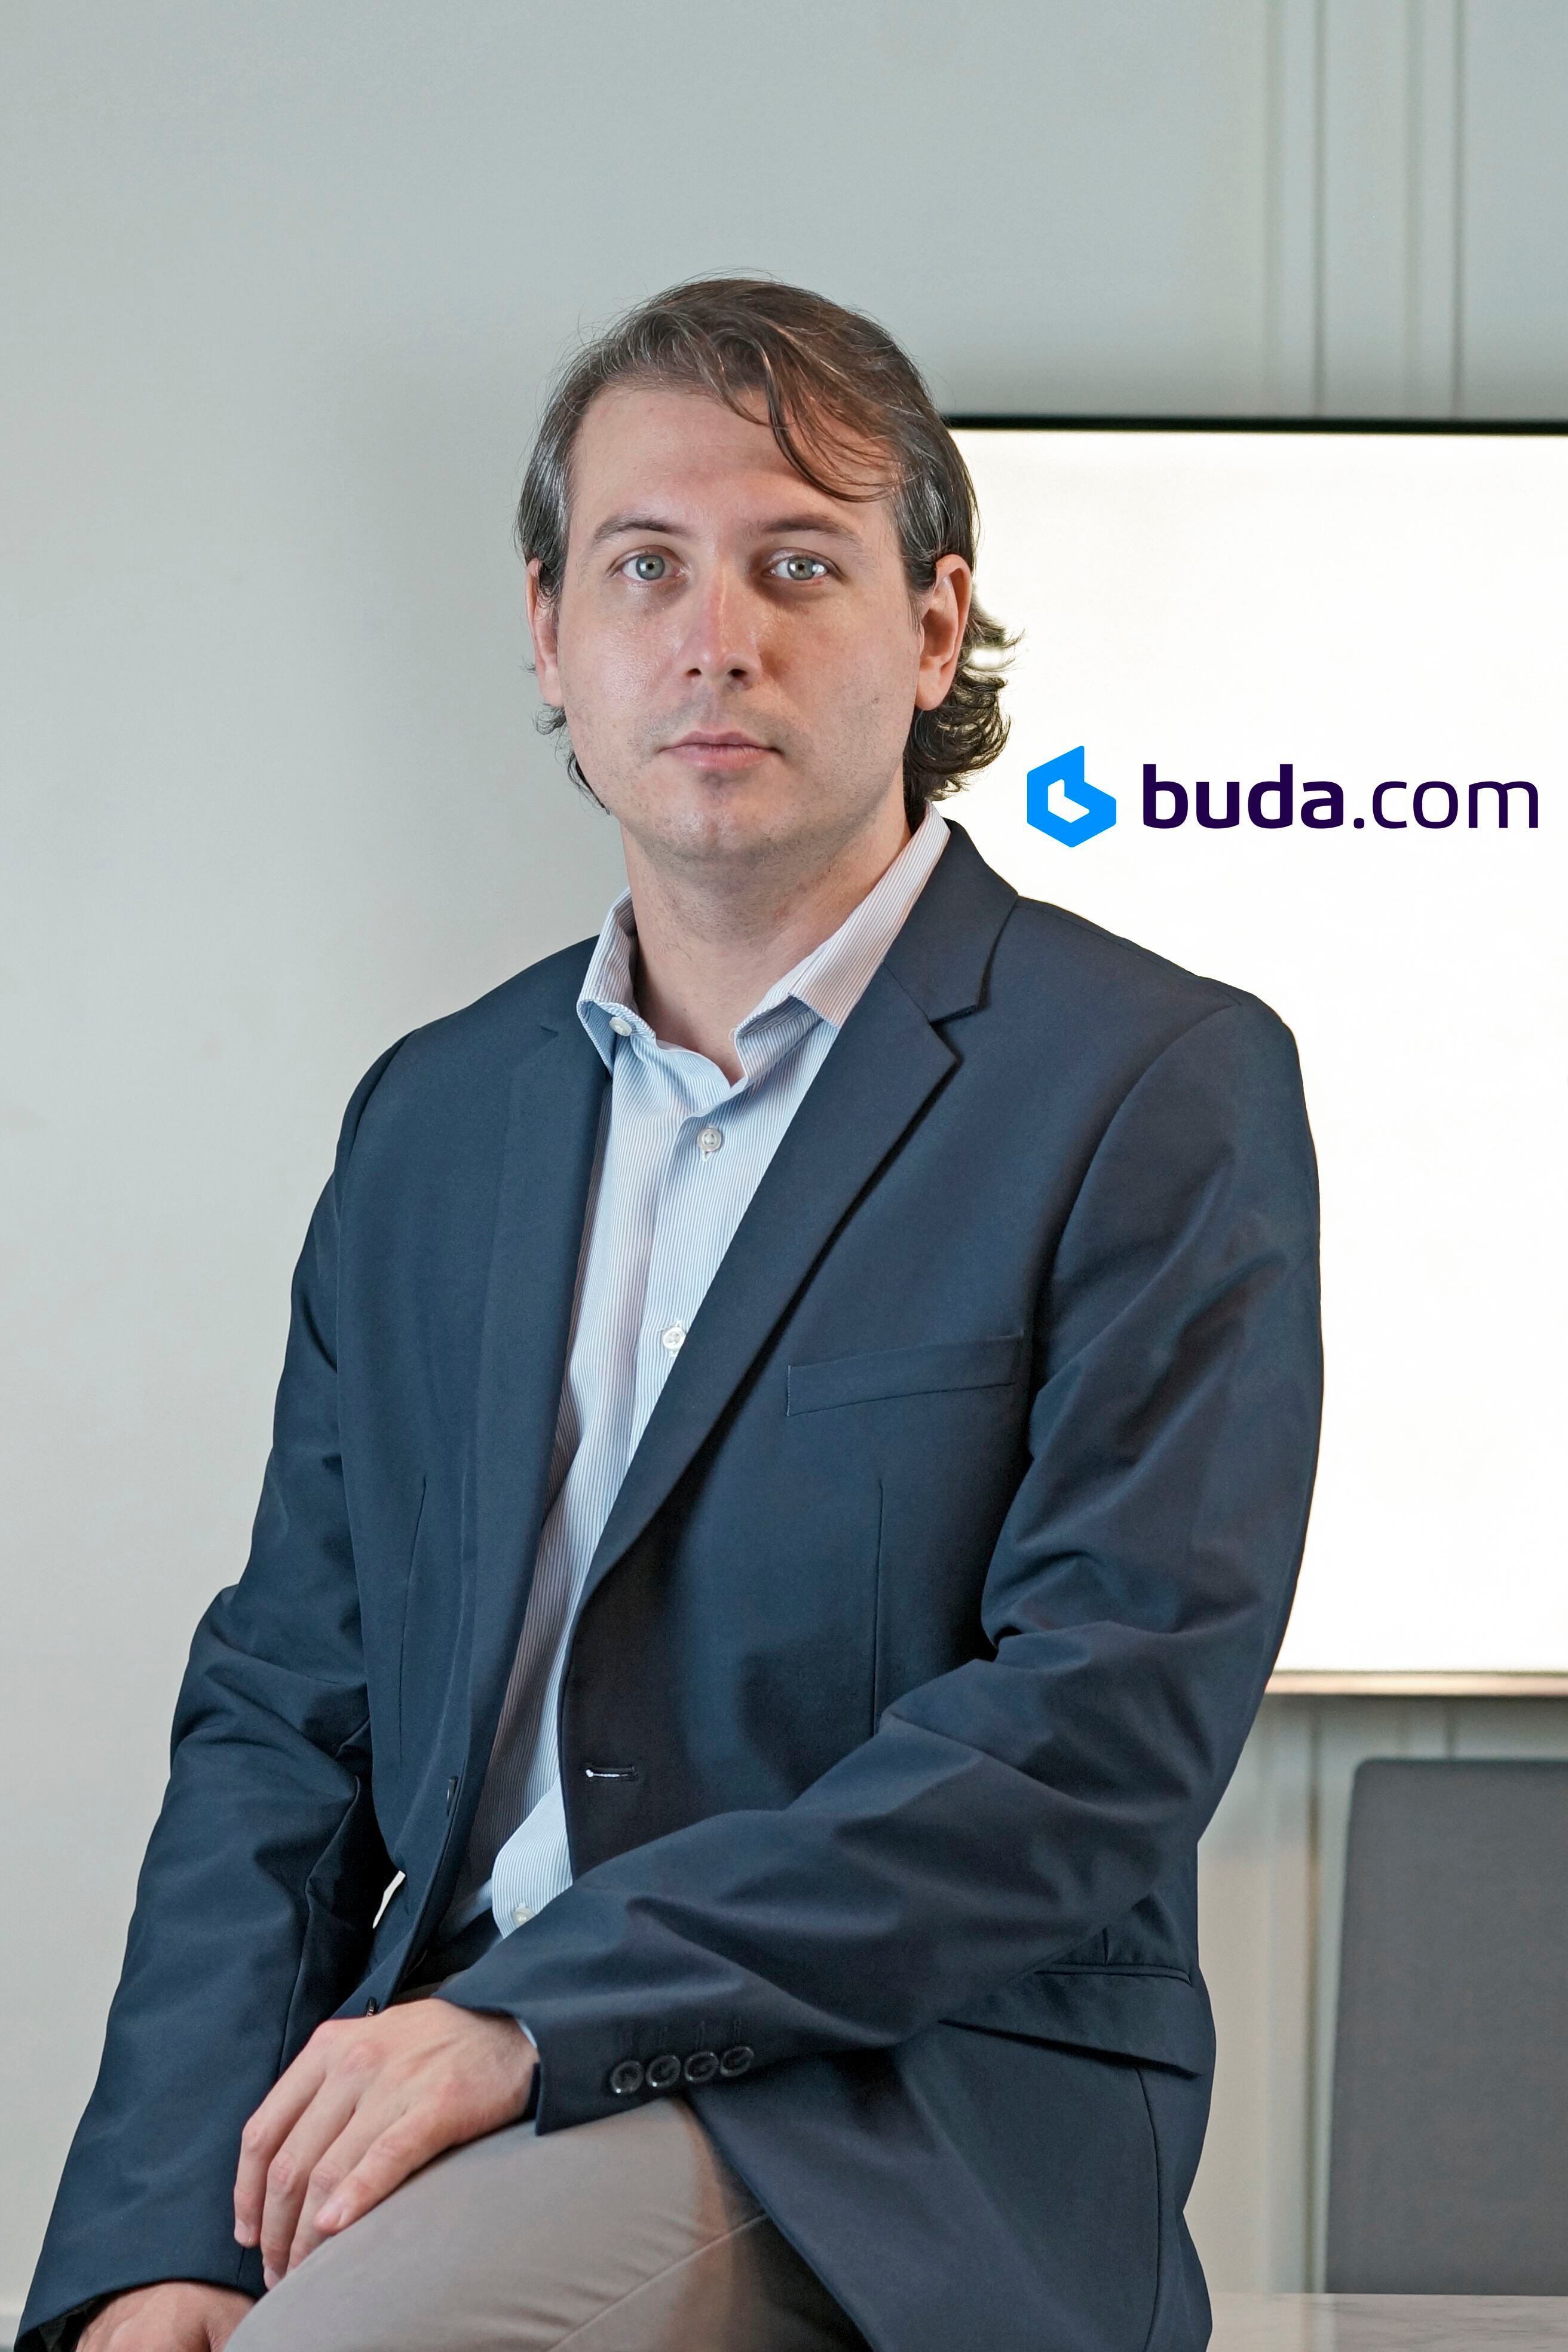  Carlos Bernos, Country Manager de Buda.com